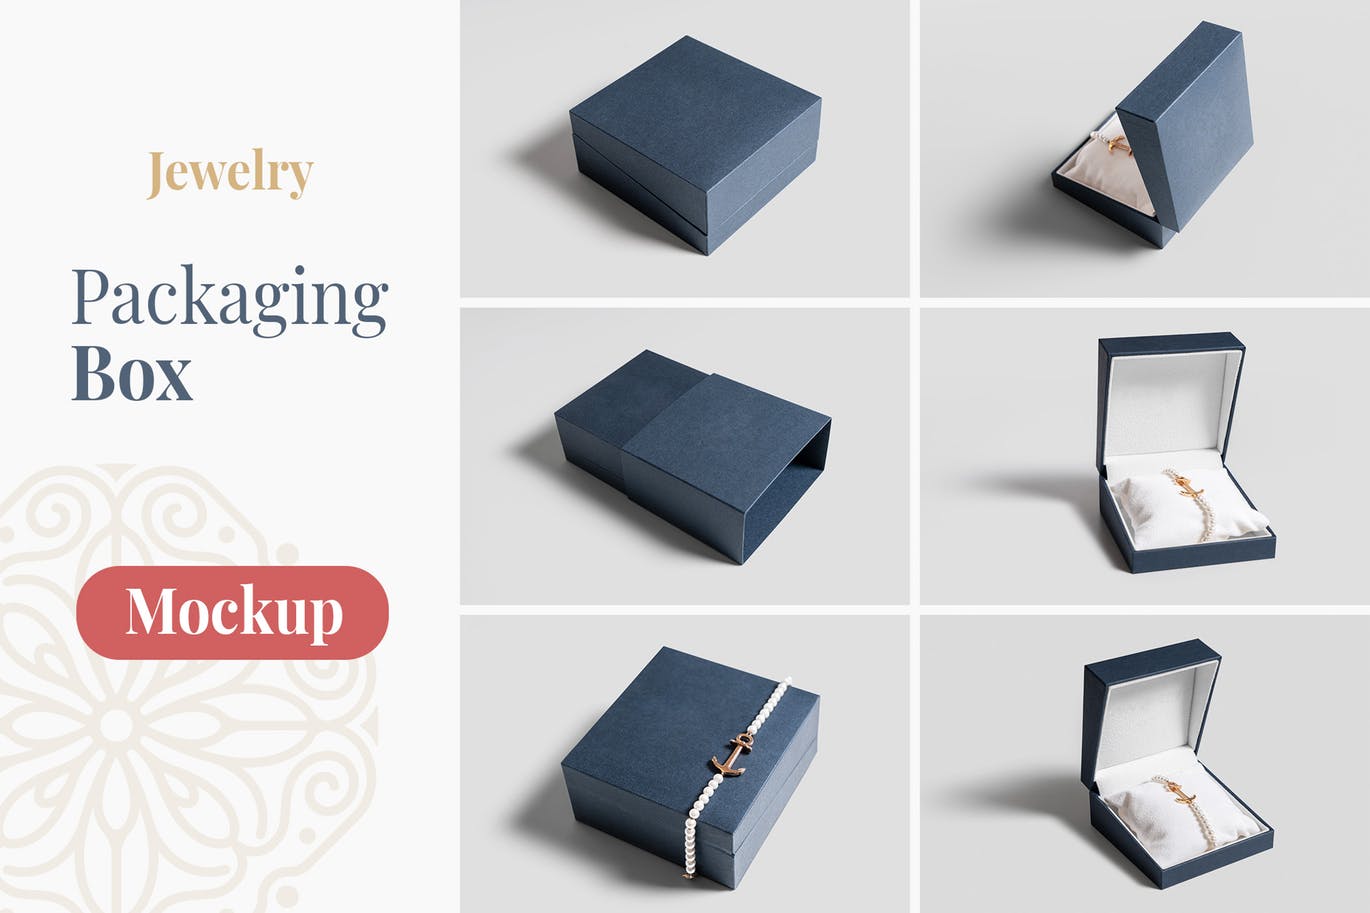 珠宝包装盒设计图第一素材精选模板 Jewelry Packaging Box Mockups插图(1)